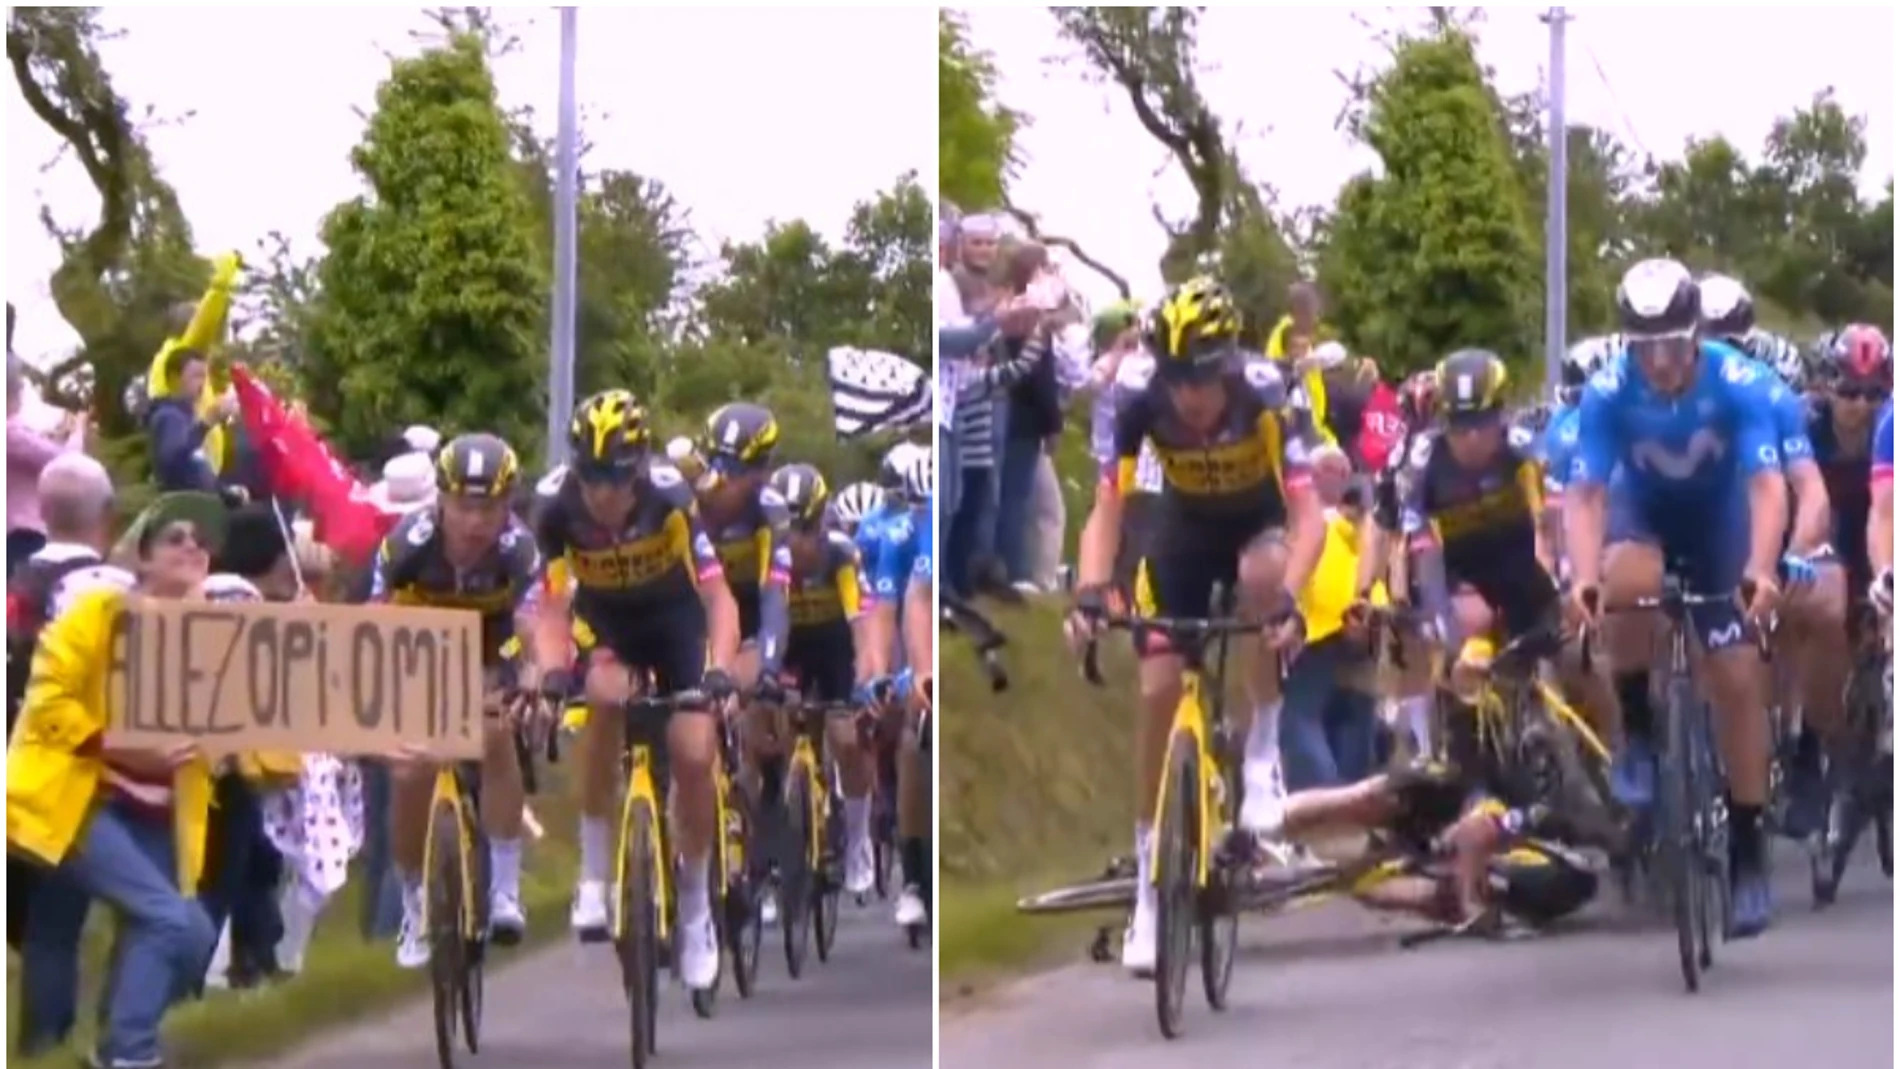 Caída masiva en el Tour de Francia